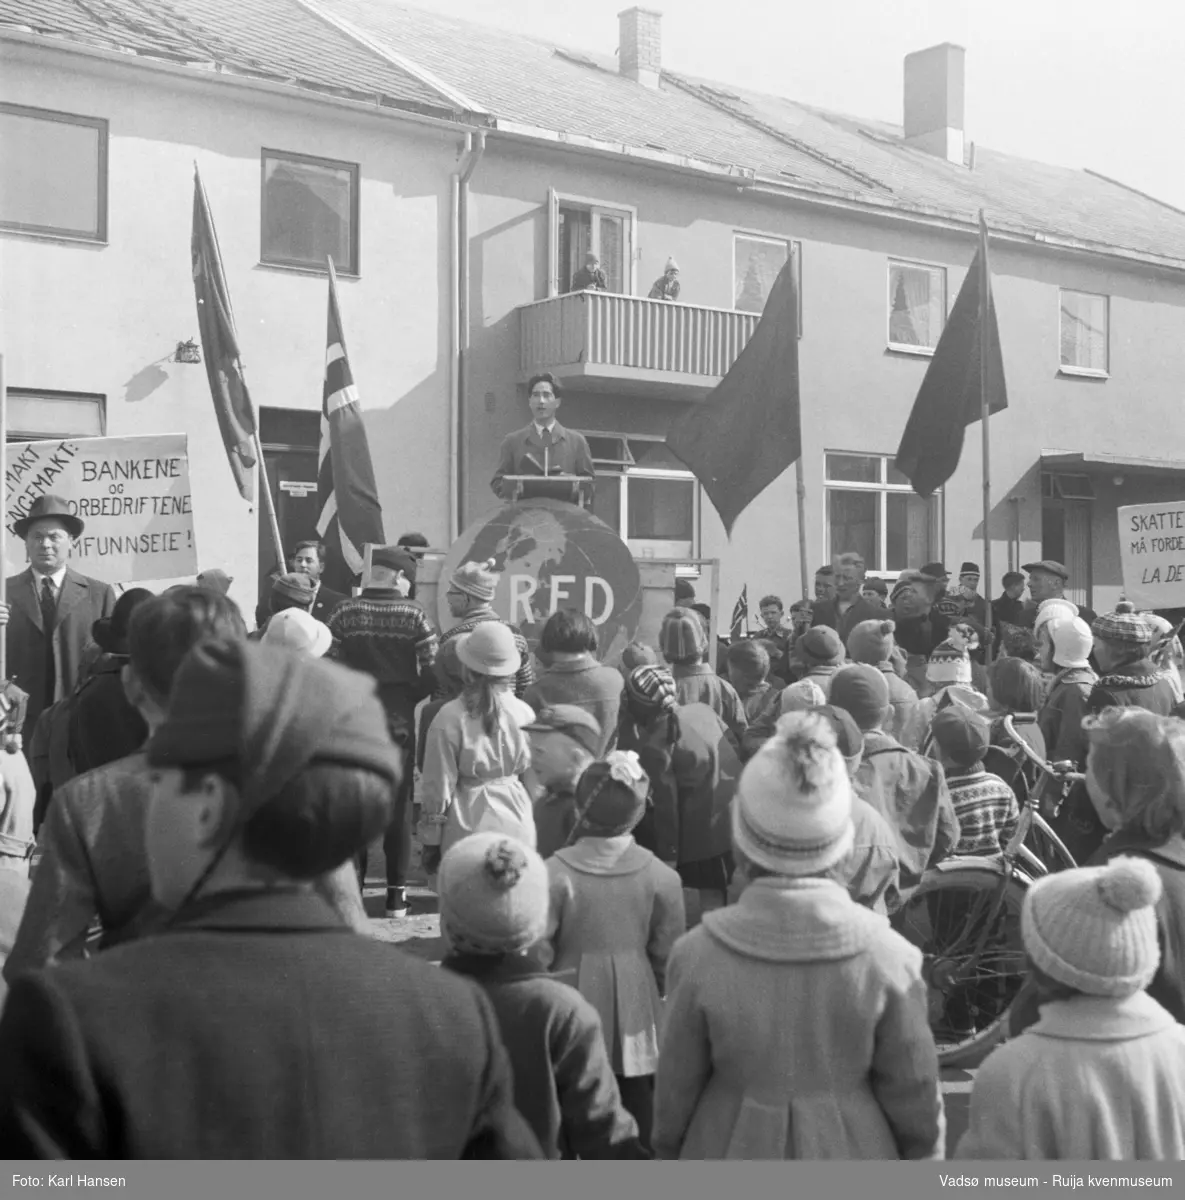 Vadsø 1.mai 1960. Samling og tale på Torget. Bygningen bak taleren er Henriksens bakeri.